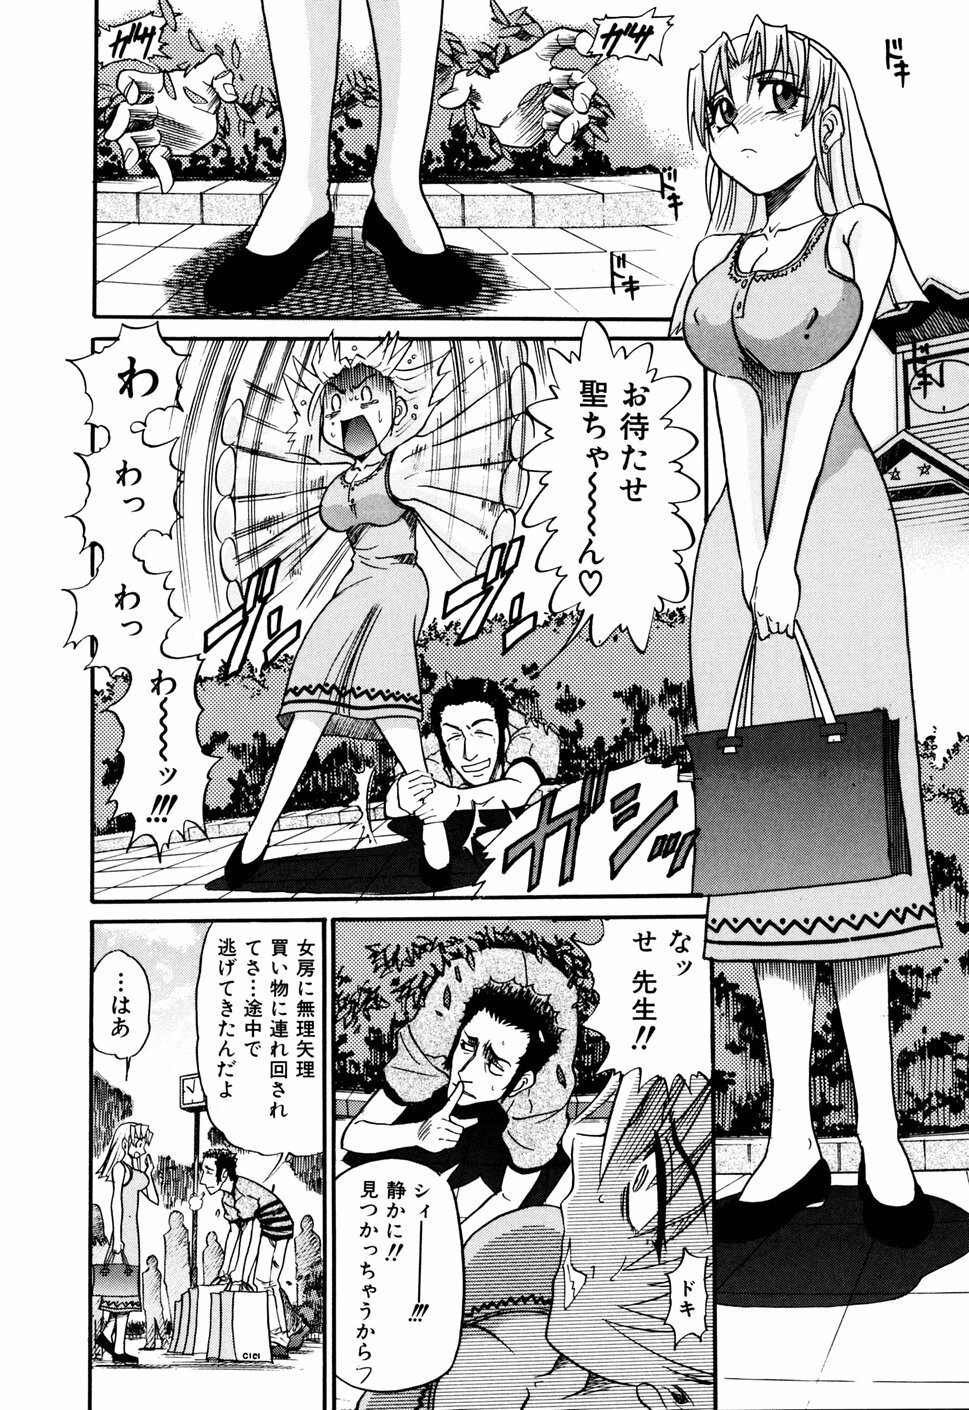 [DISTANCE] Ochiru Tenshi Vol. 1 page 50 full